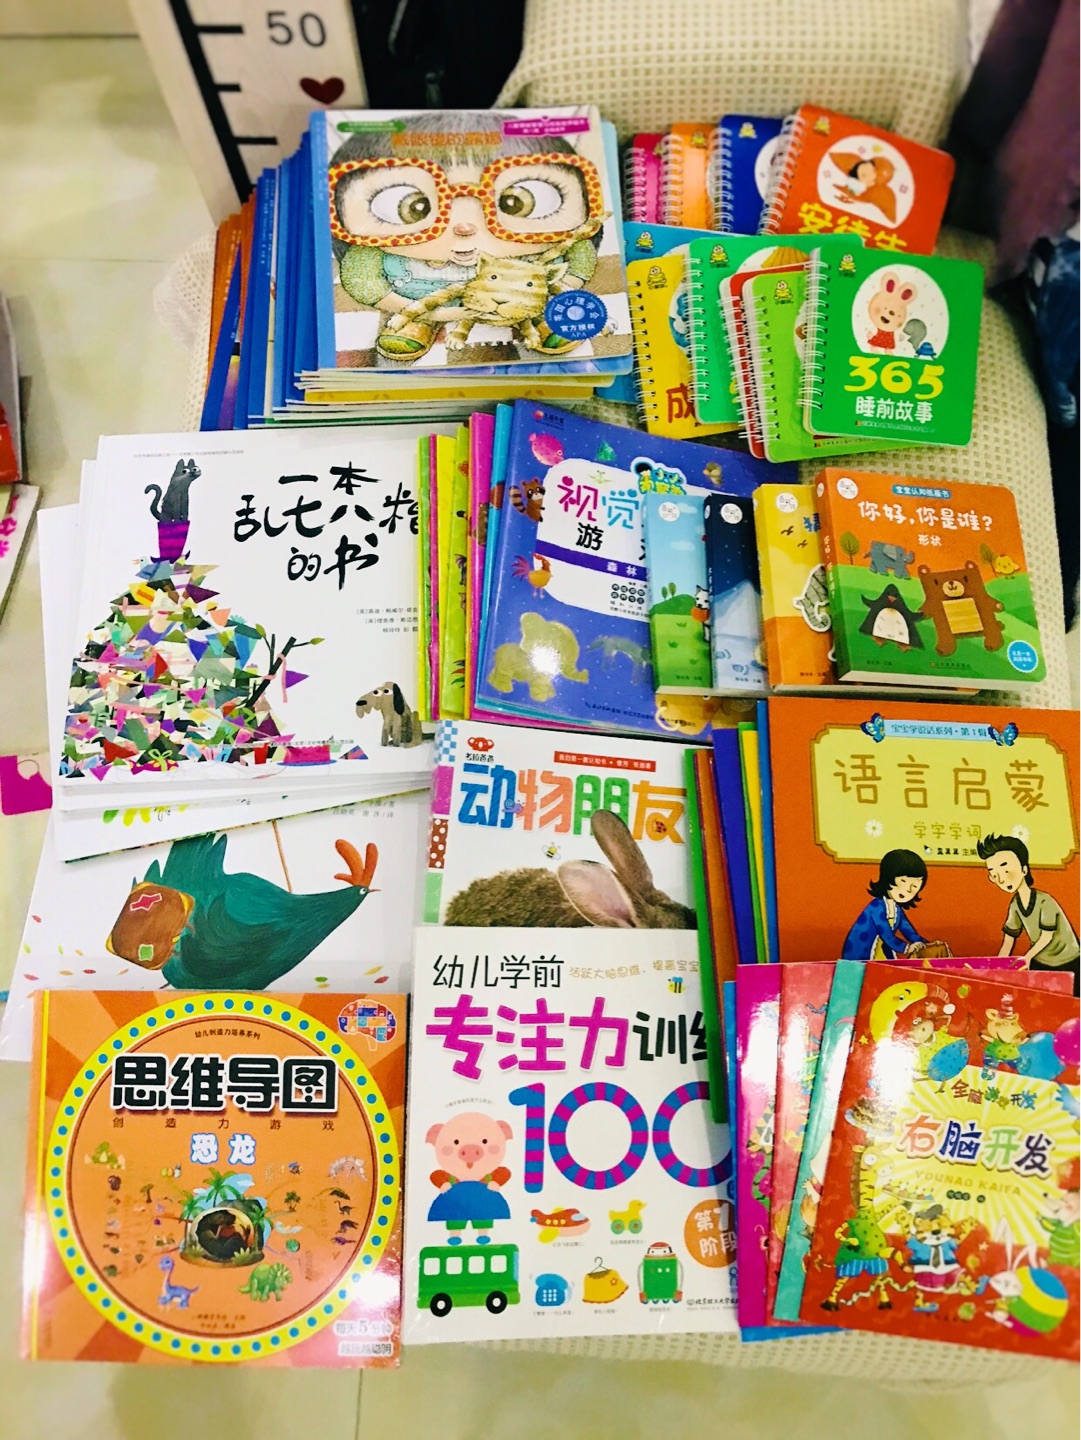 绘本老师推荐的书。一直在买书，有活动很合适，快递很快，孩子很喜欢。